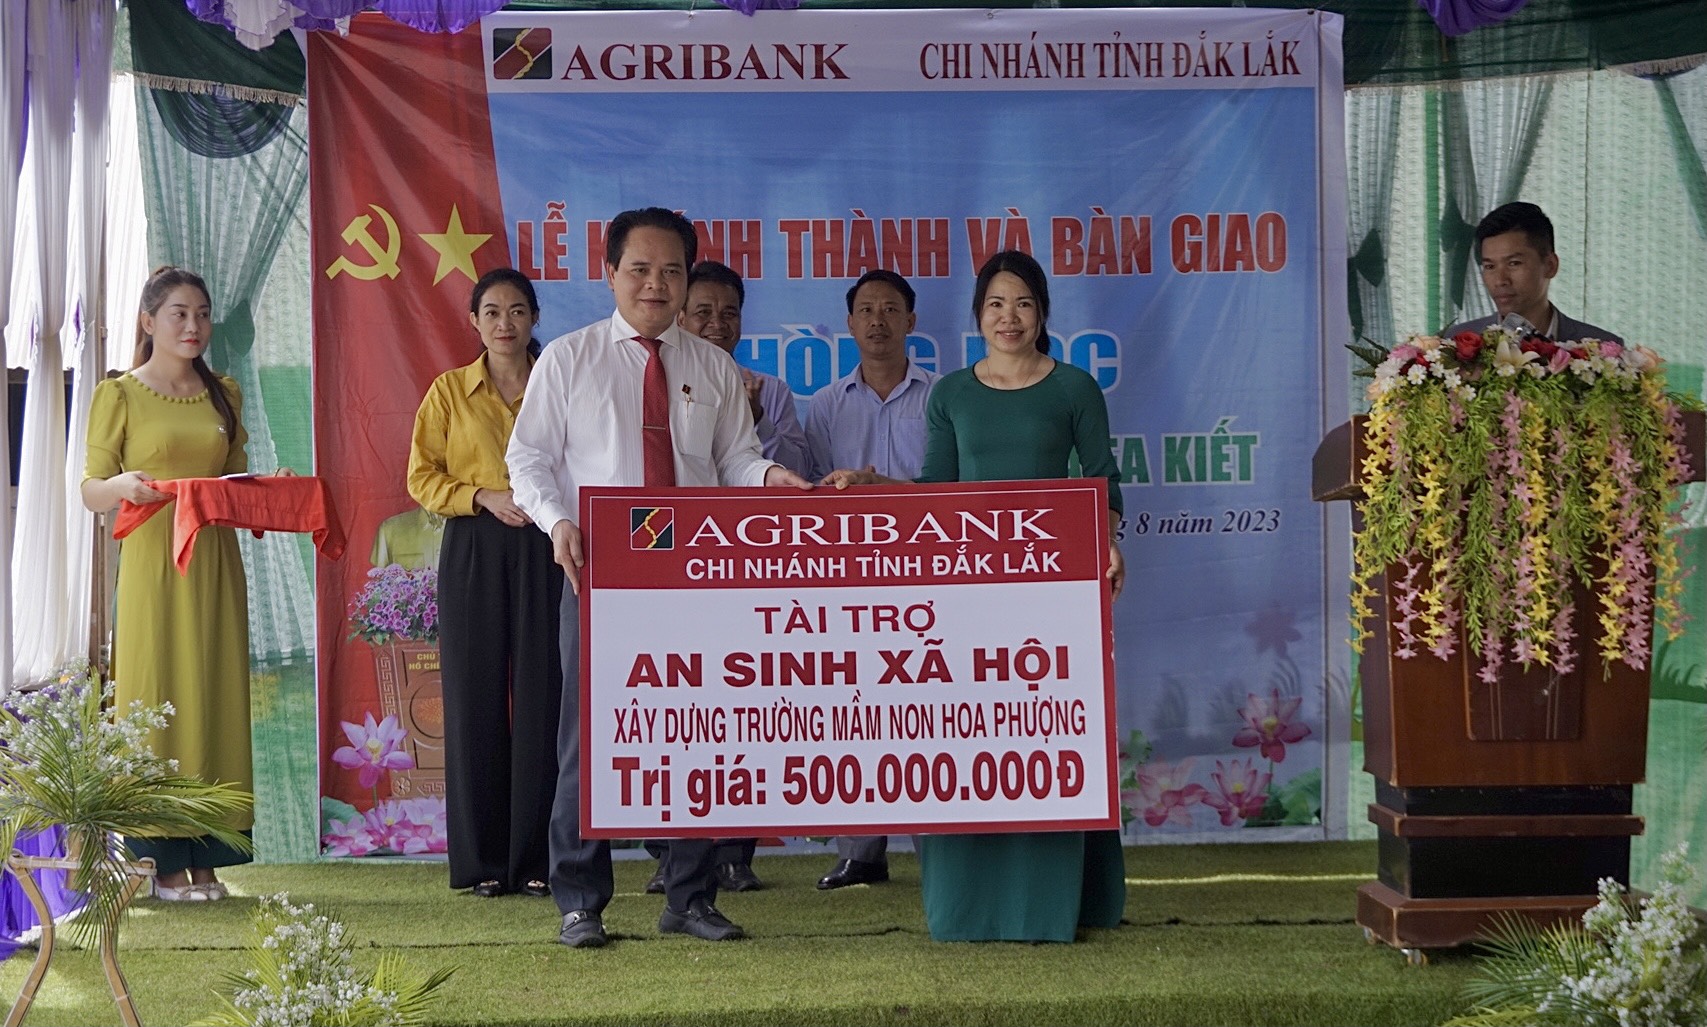 Agribank tỉnh Đắk Lắk khánh thành và bàn giao phòng học tại xã Ea Kiết